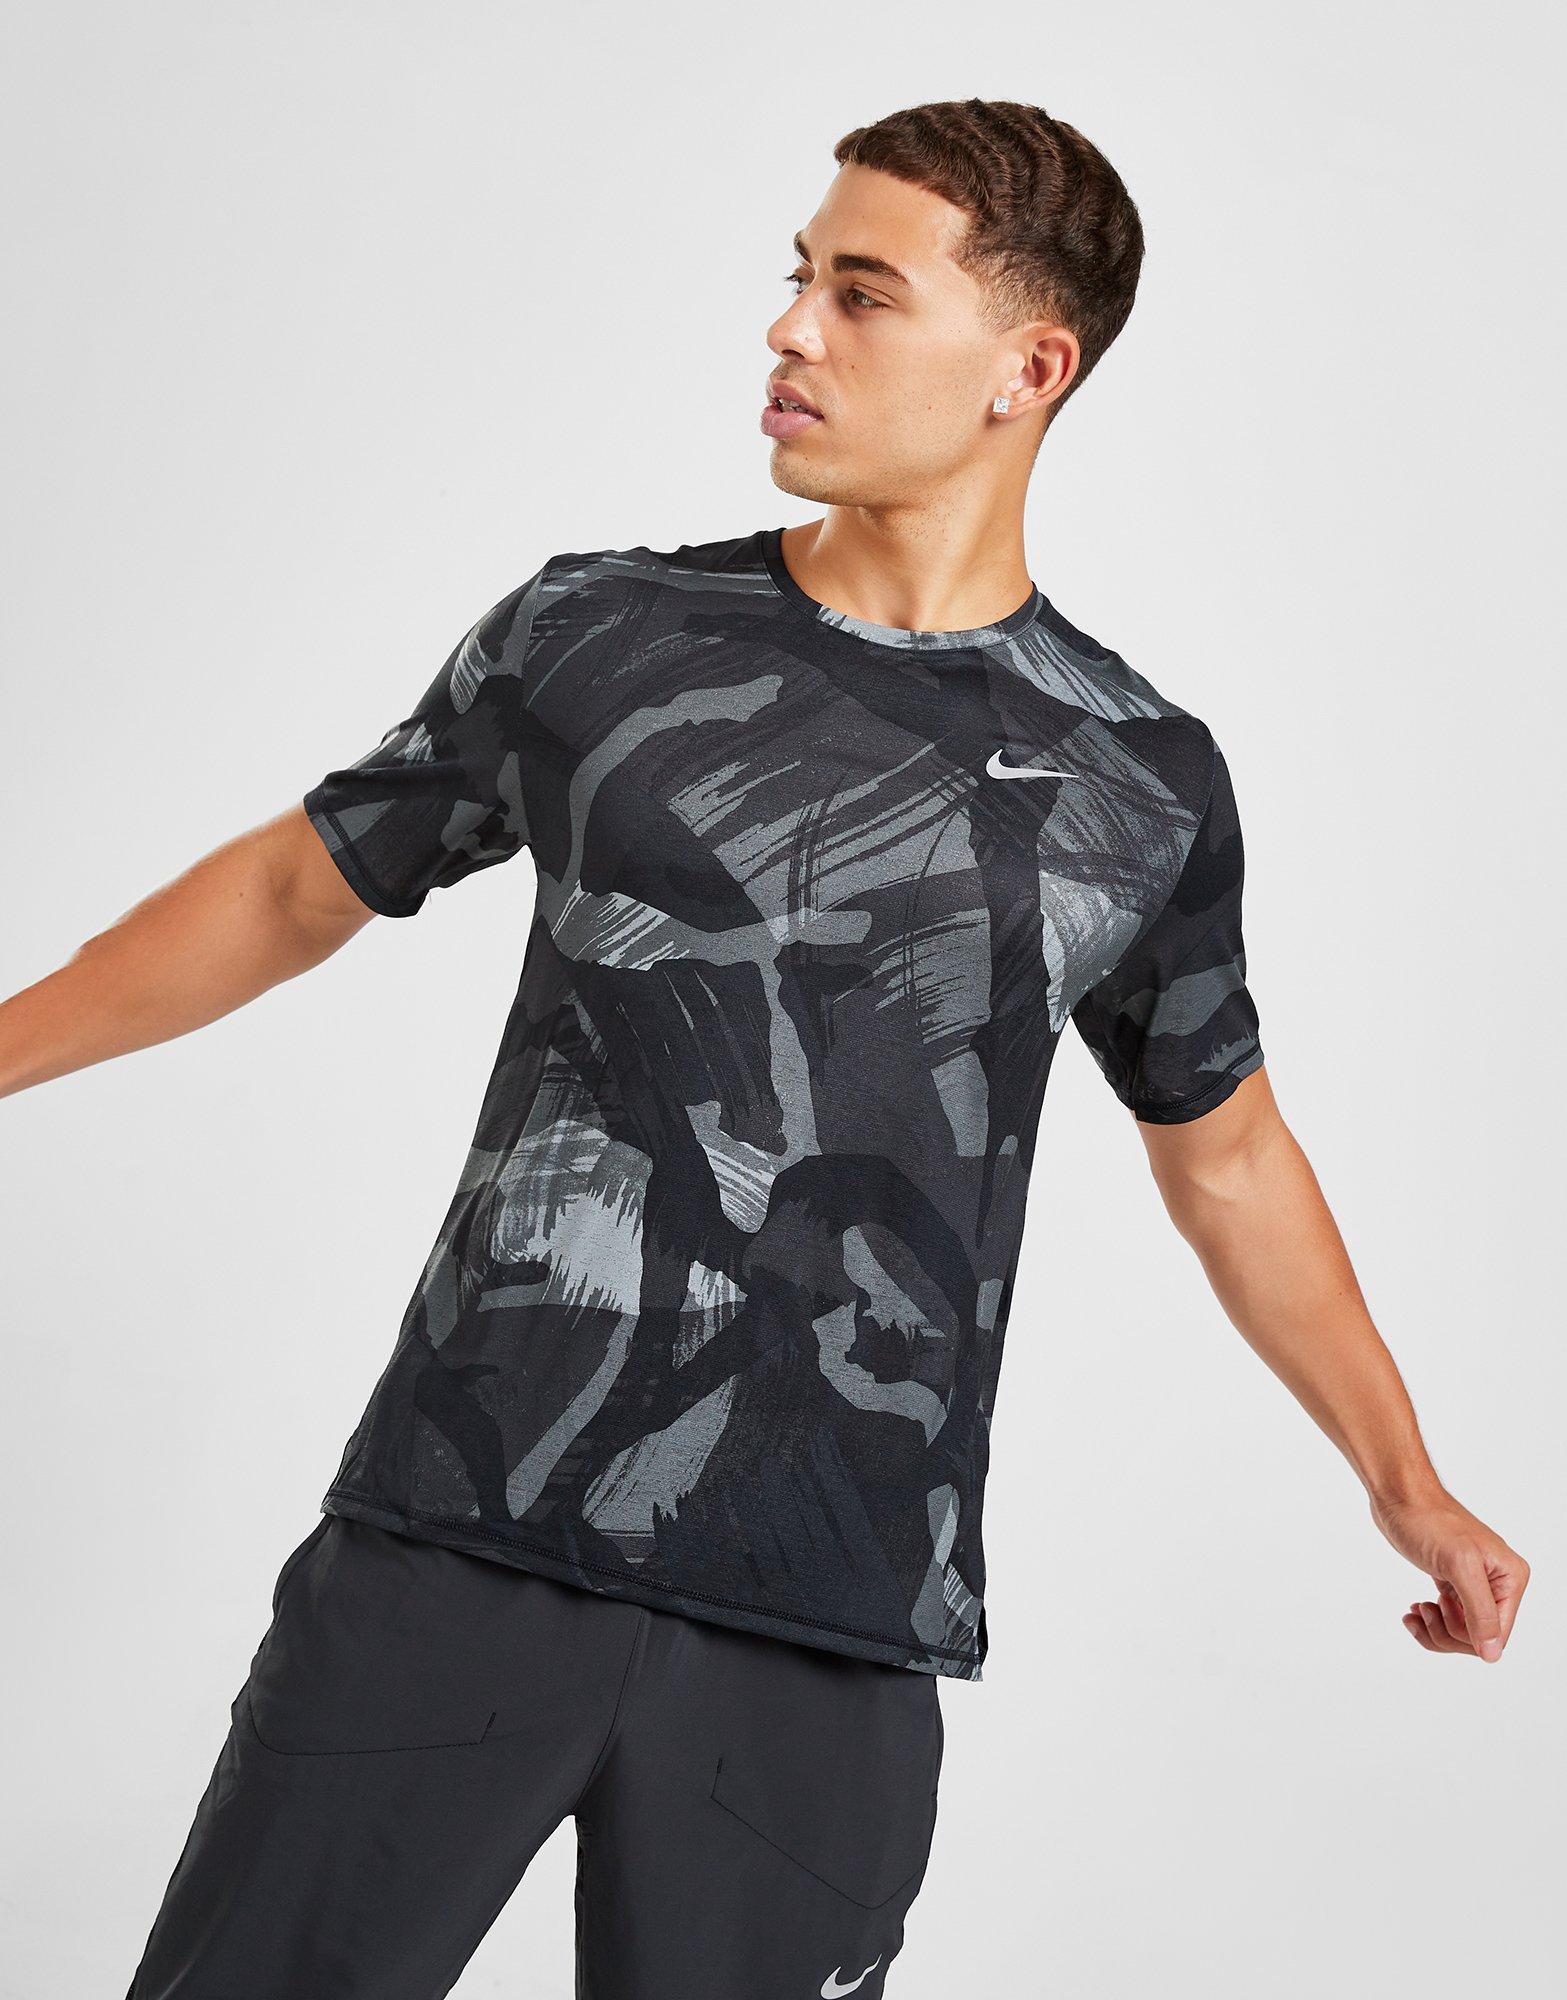 Nike, Tops, Nike Camo T Shirt